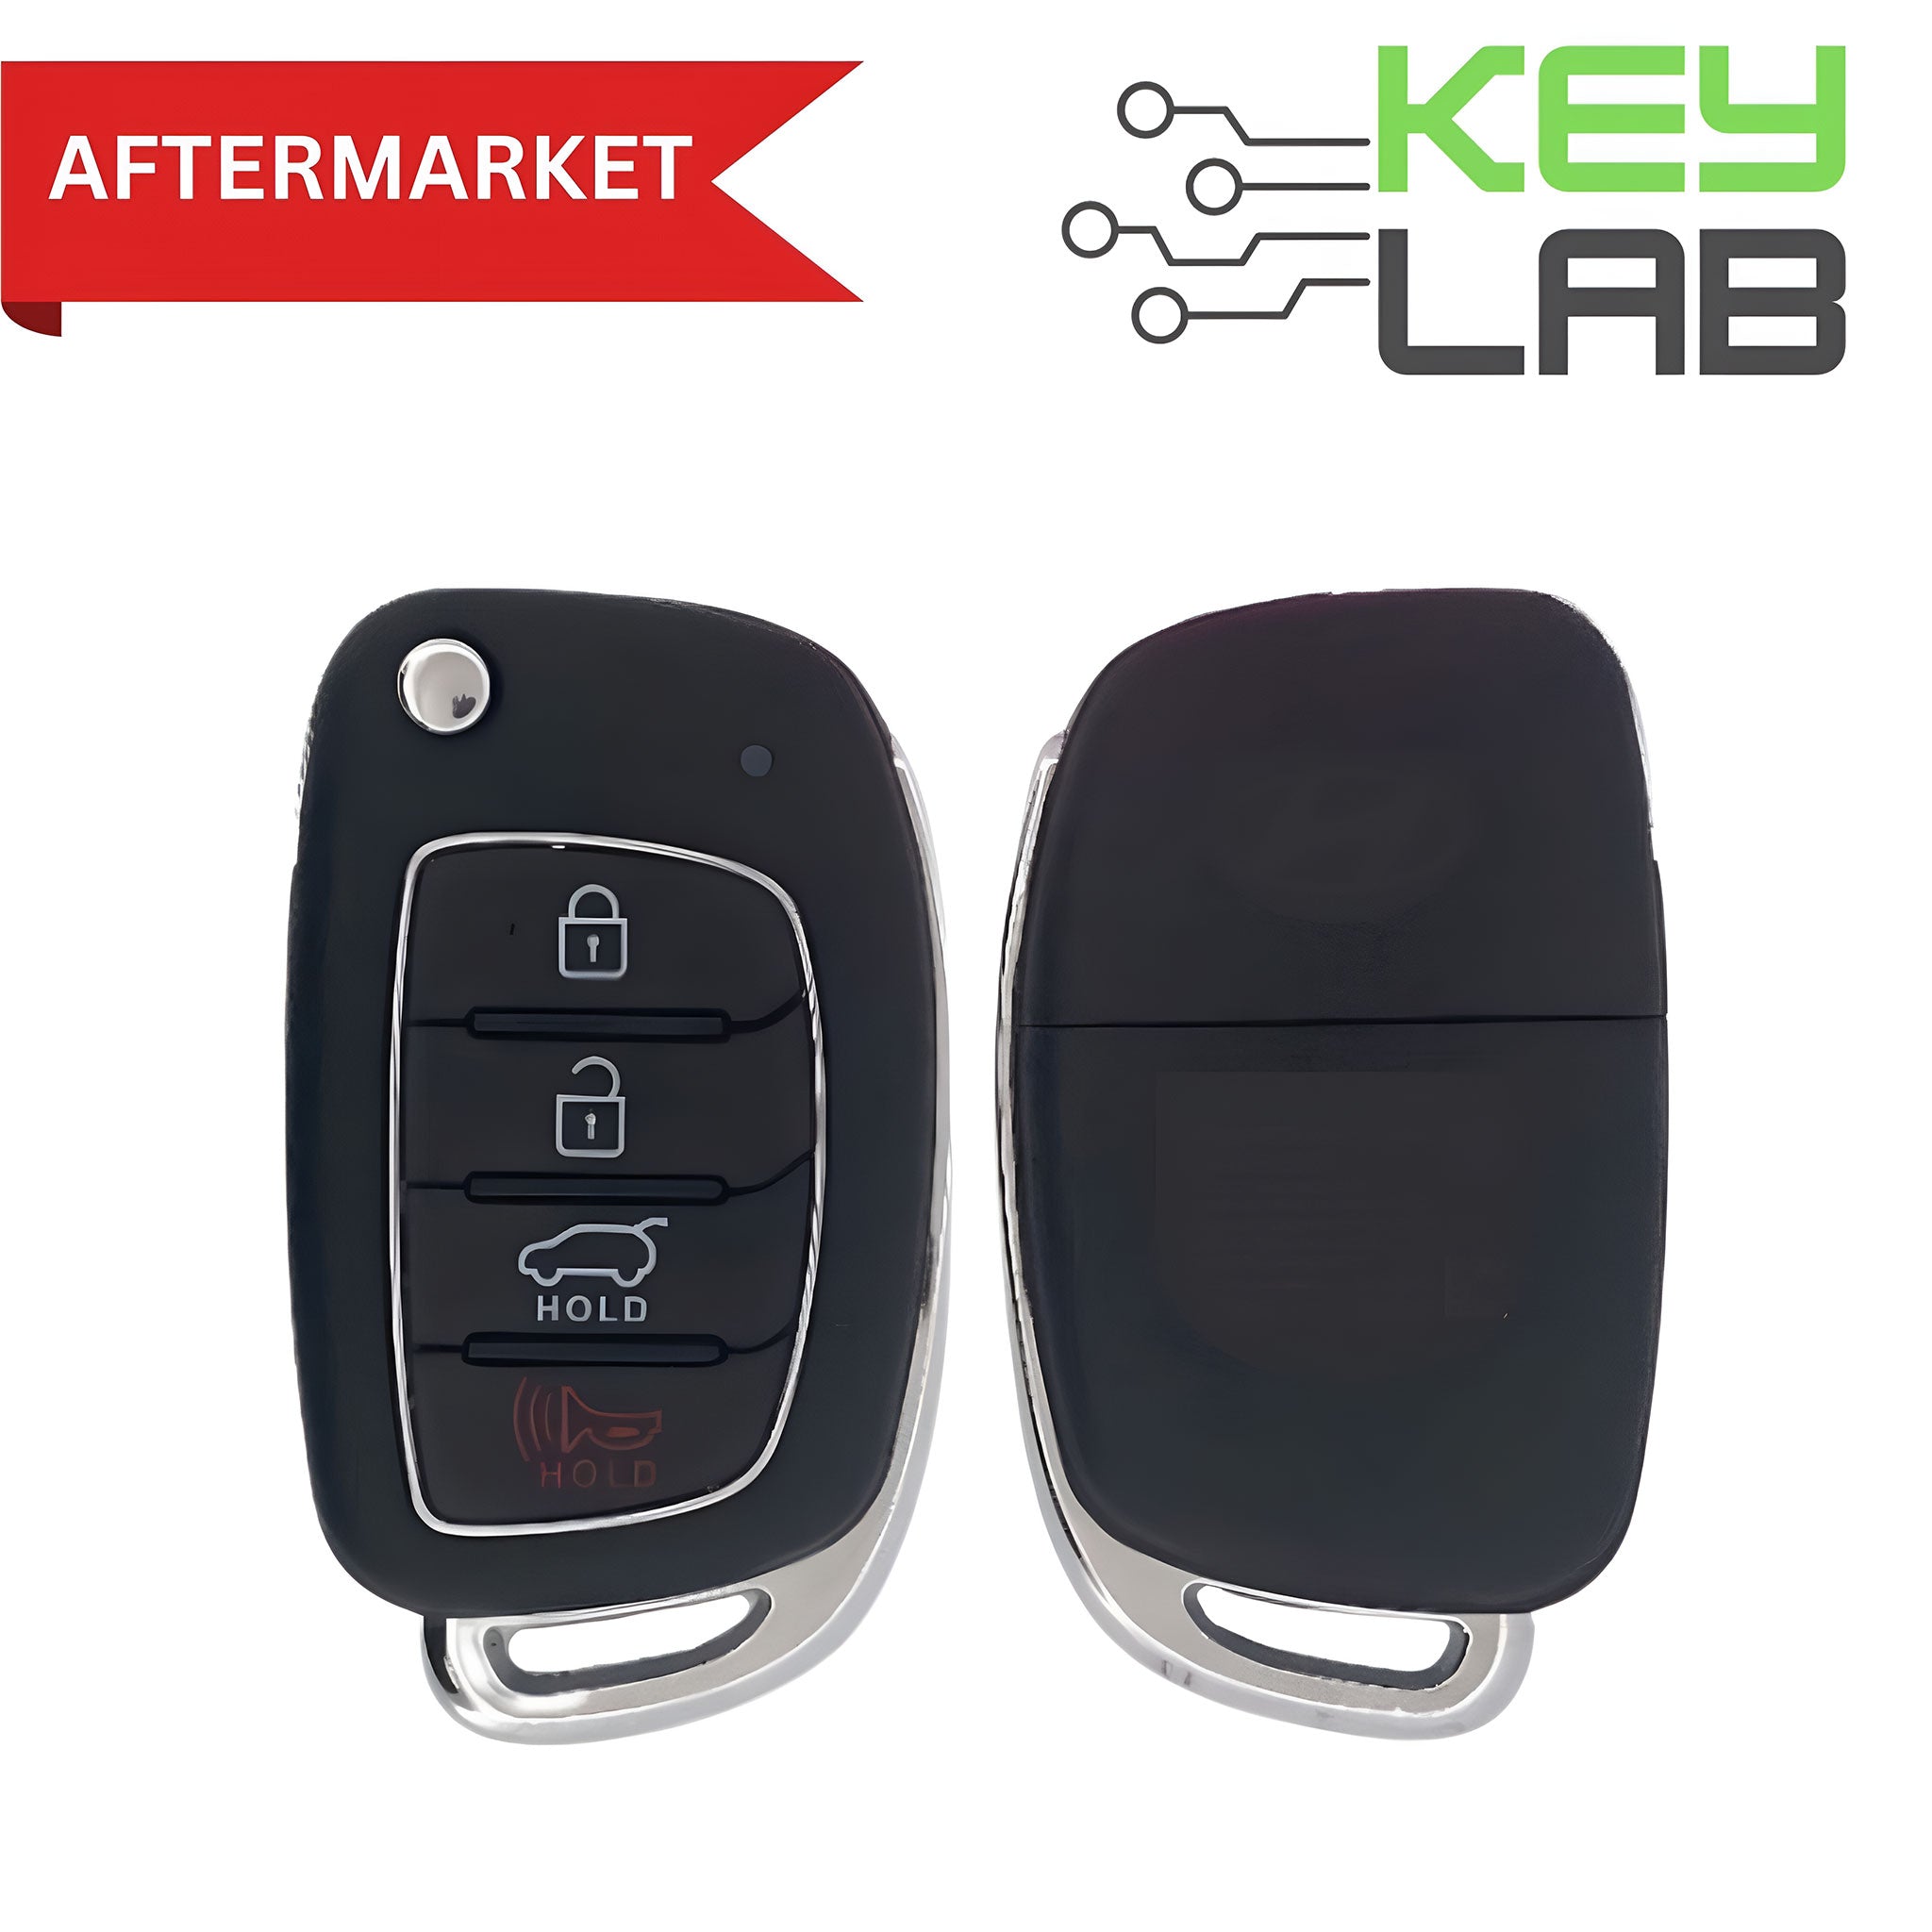 Hyundai Aftermarket 2015-2019 Tucson Remote Flip Key 4B Hatch FCCID: TQ8-RKE-4F25 PN# 95430-D3010 - Royal Key Supply